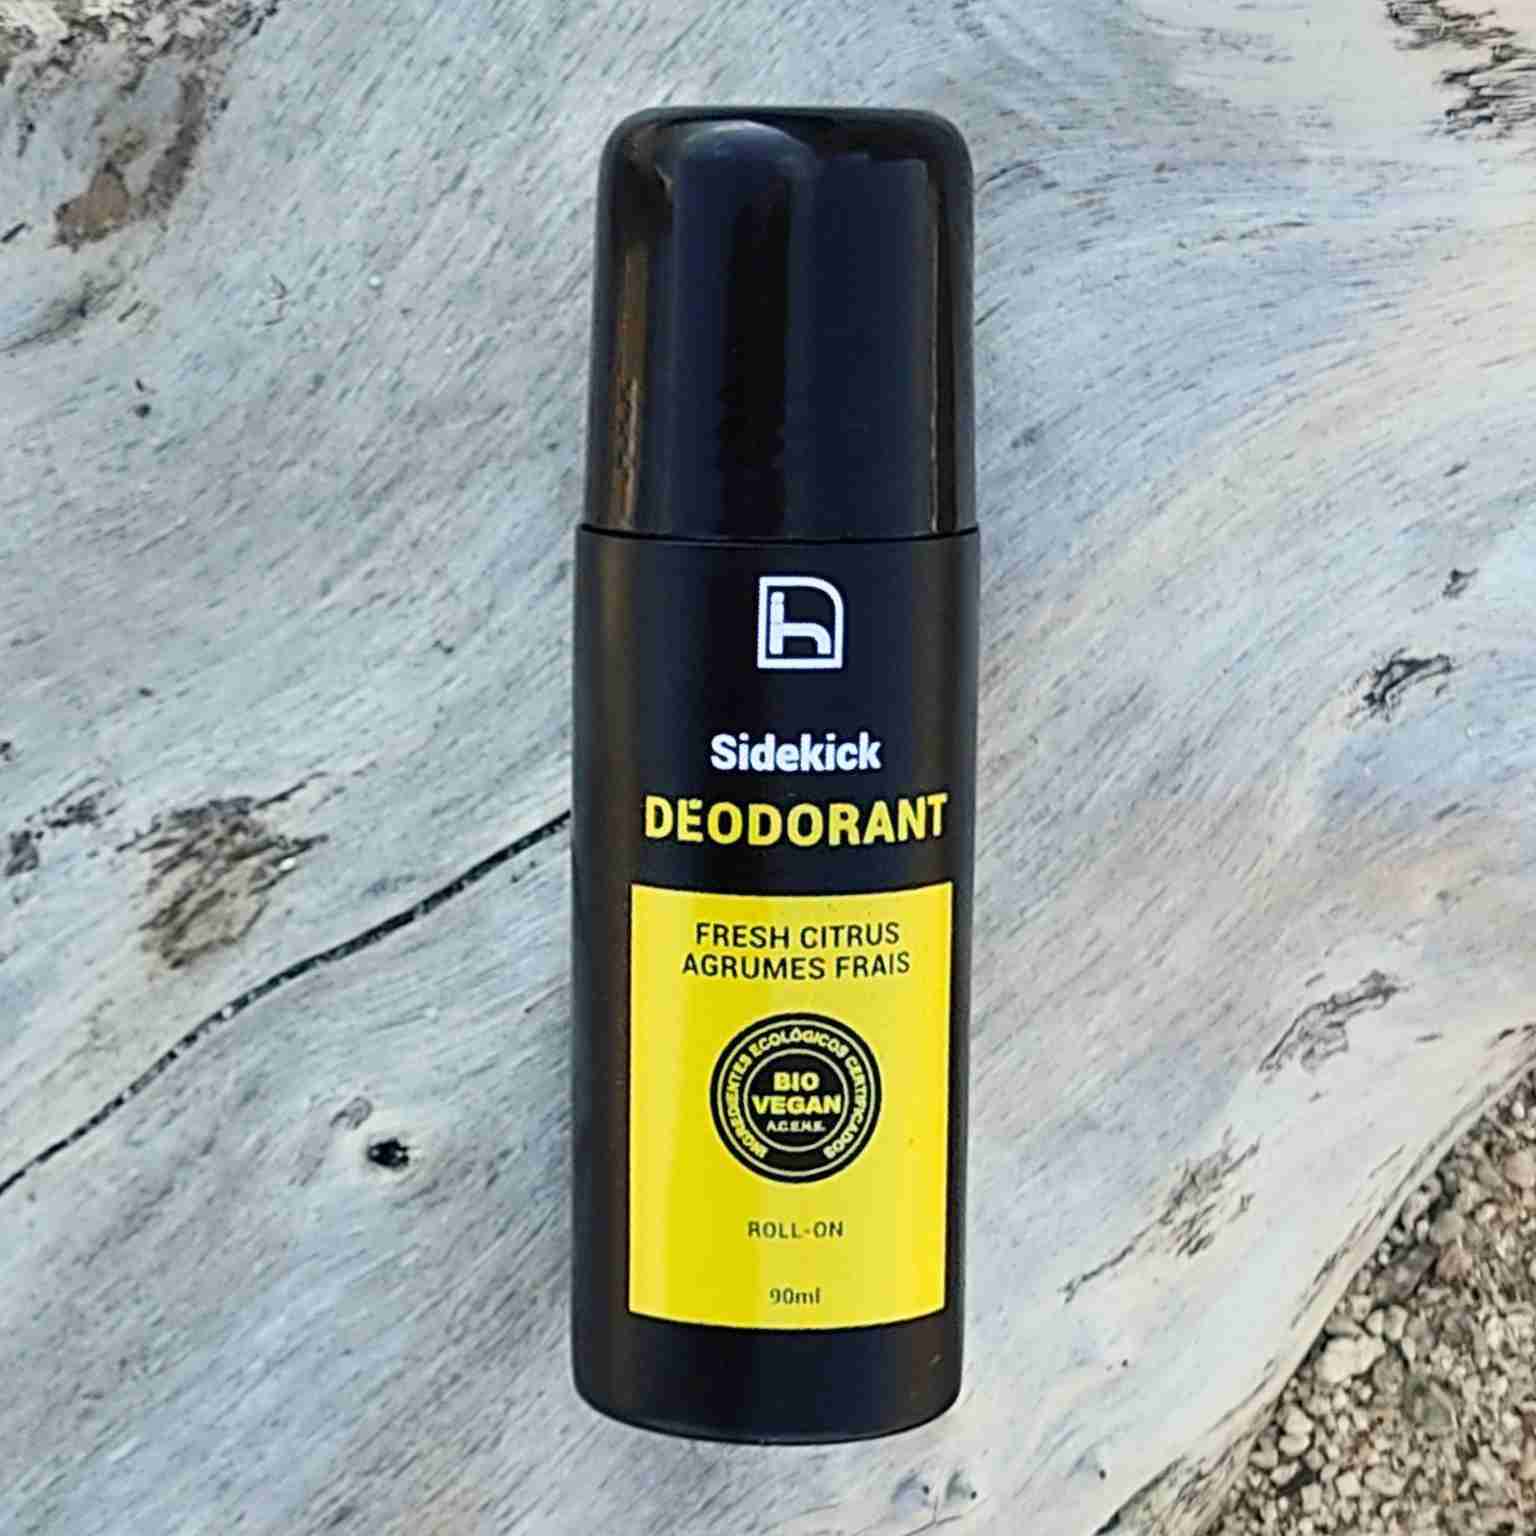 Desodorante para hombre sin aluminio y sin alcohol. Roll on. Natural, ecológico y vegano